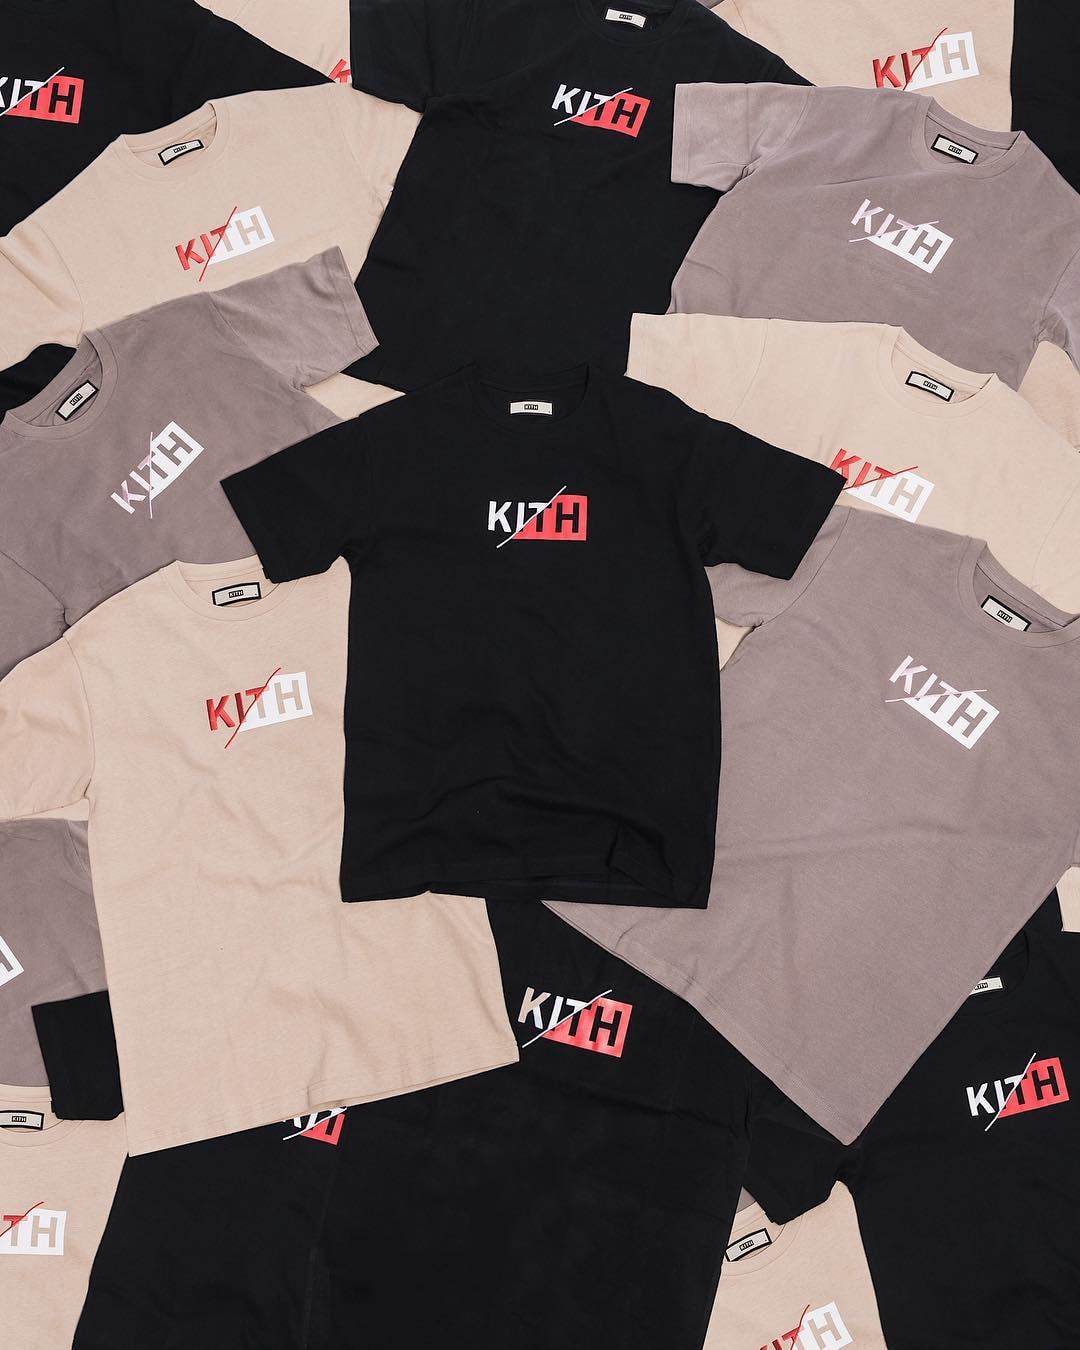 KITH 全新「Slash Logo」T-Shirt 系列即將上架